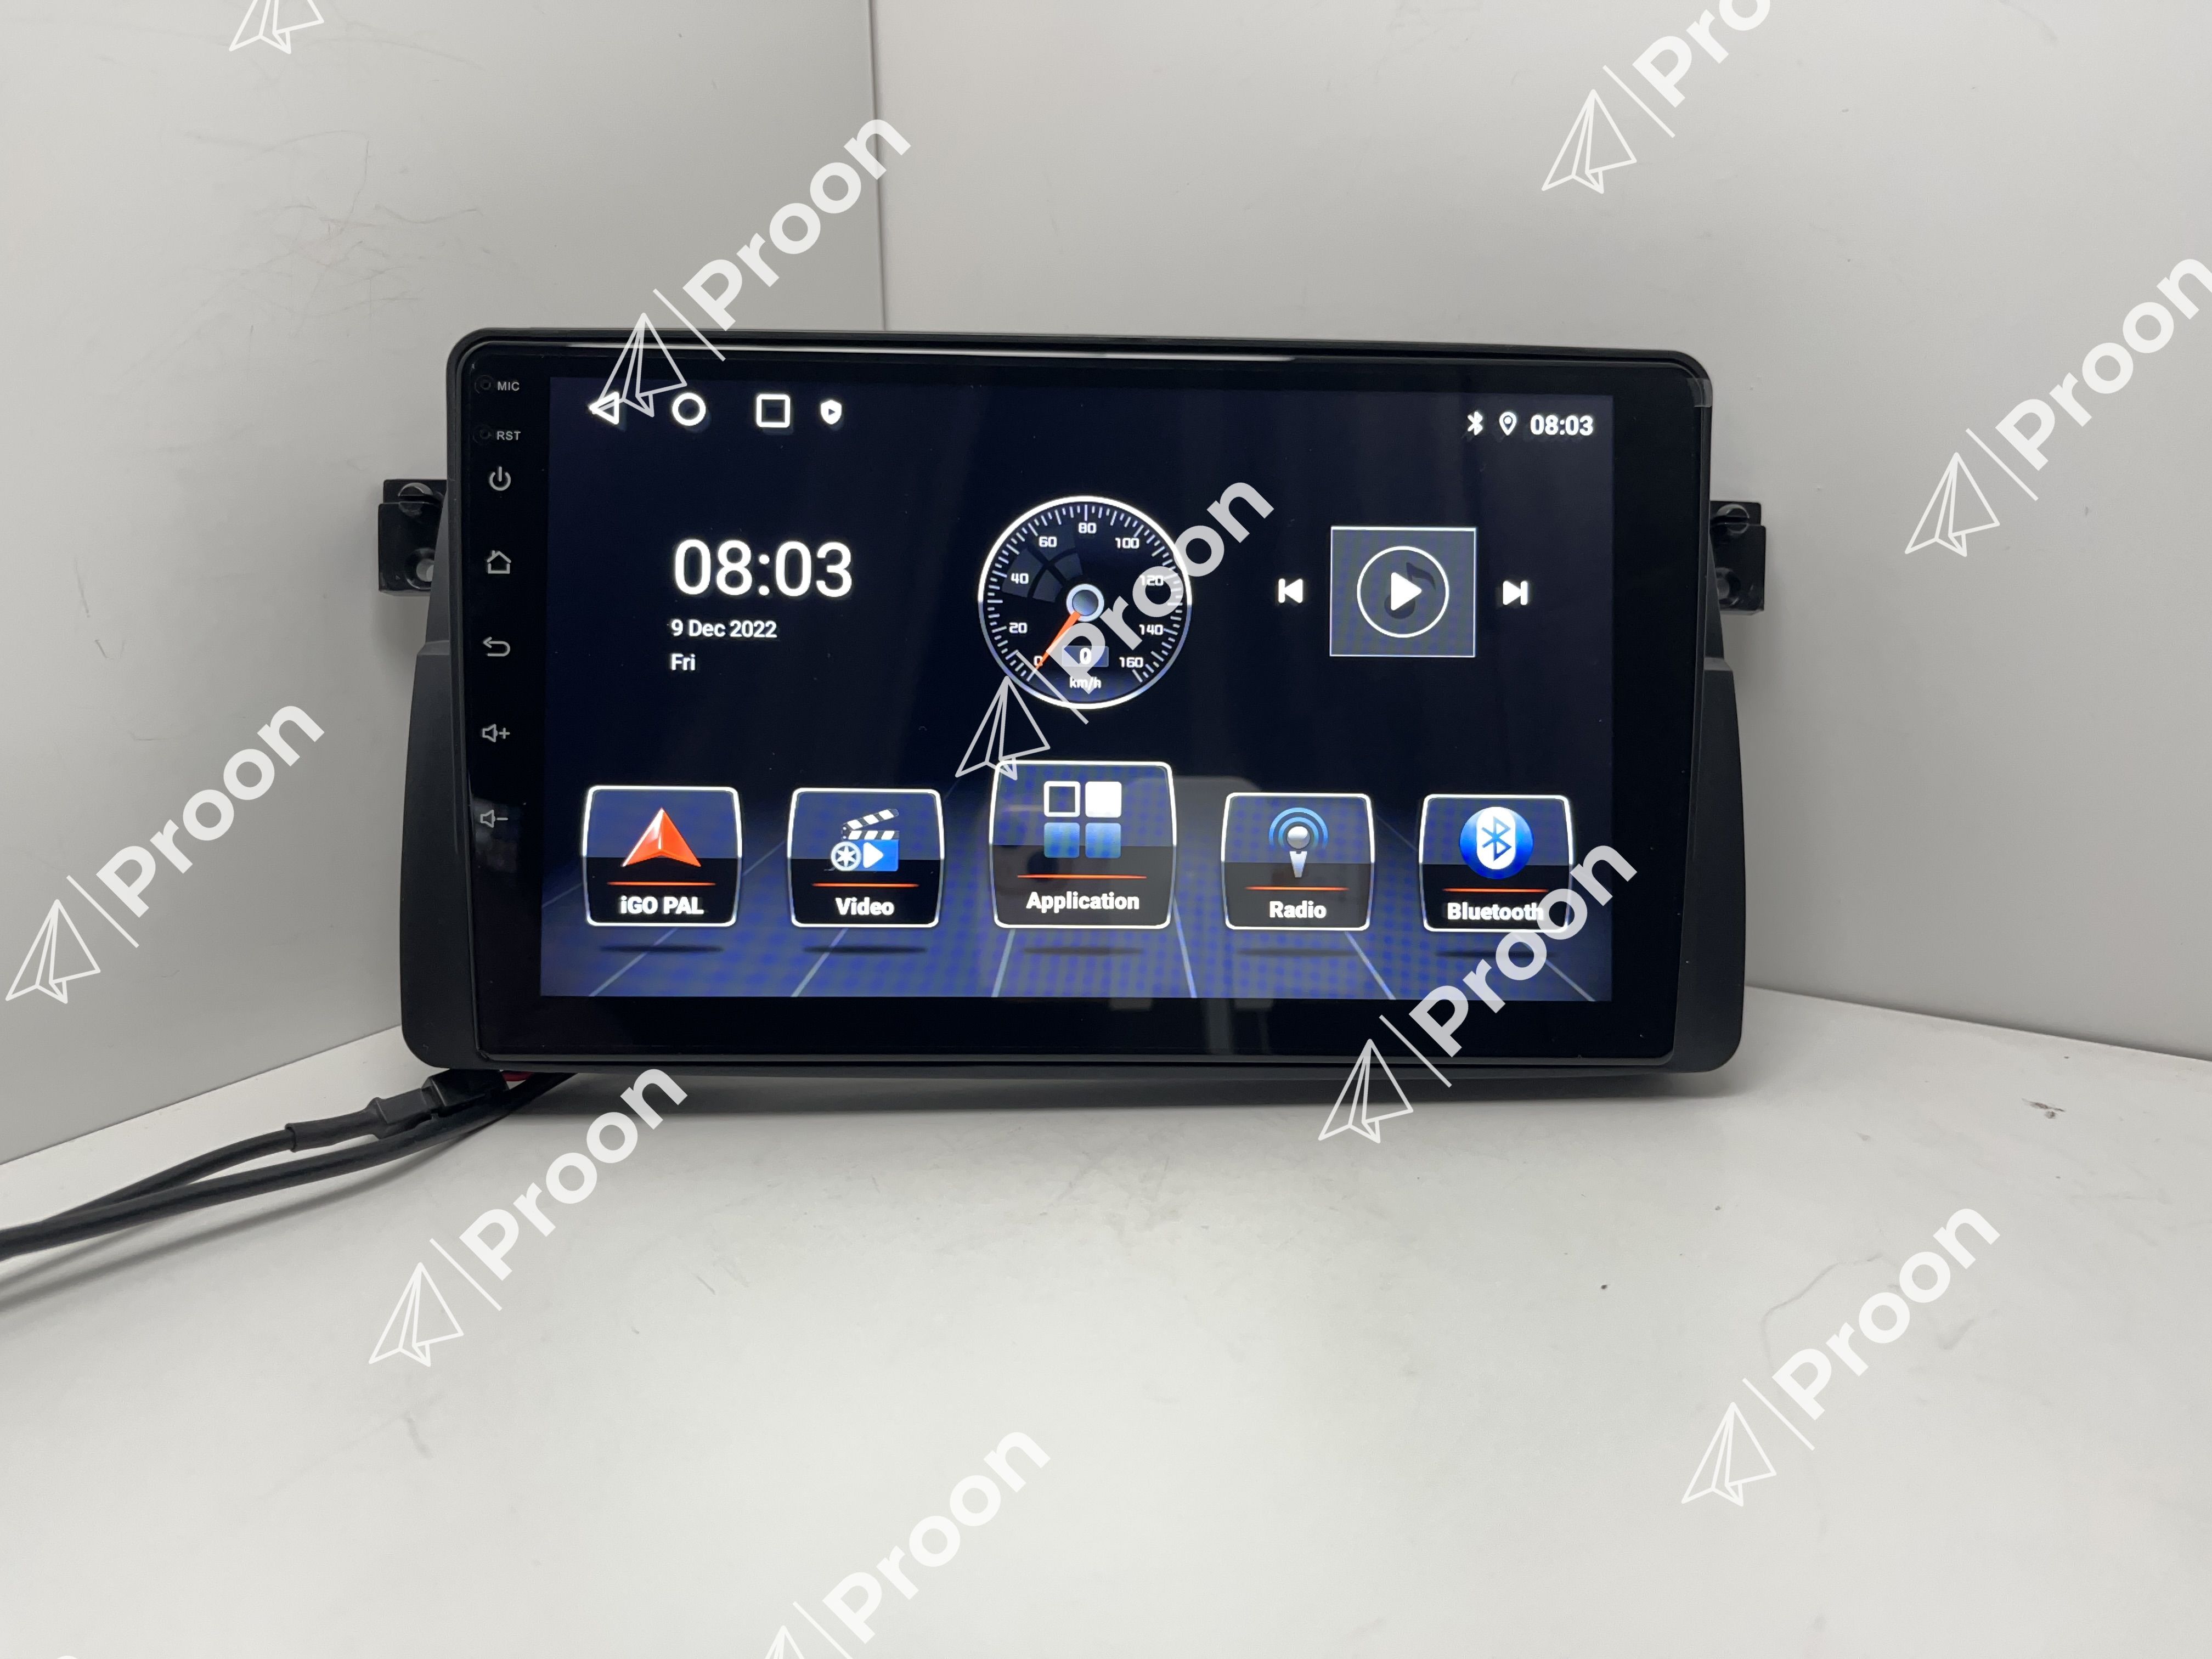 Auto Rádio Bmw E46 Android 2 din ano 1998 até 2006